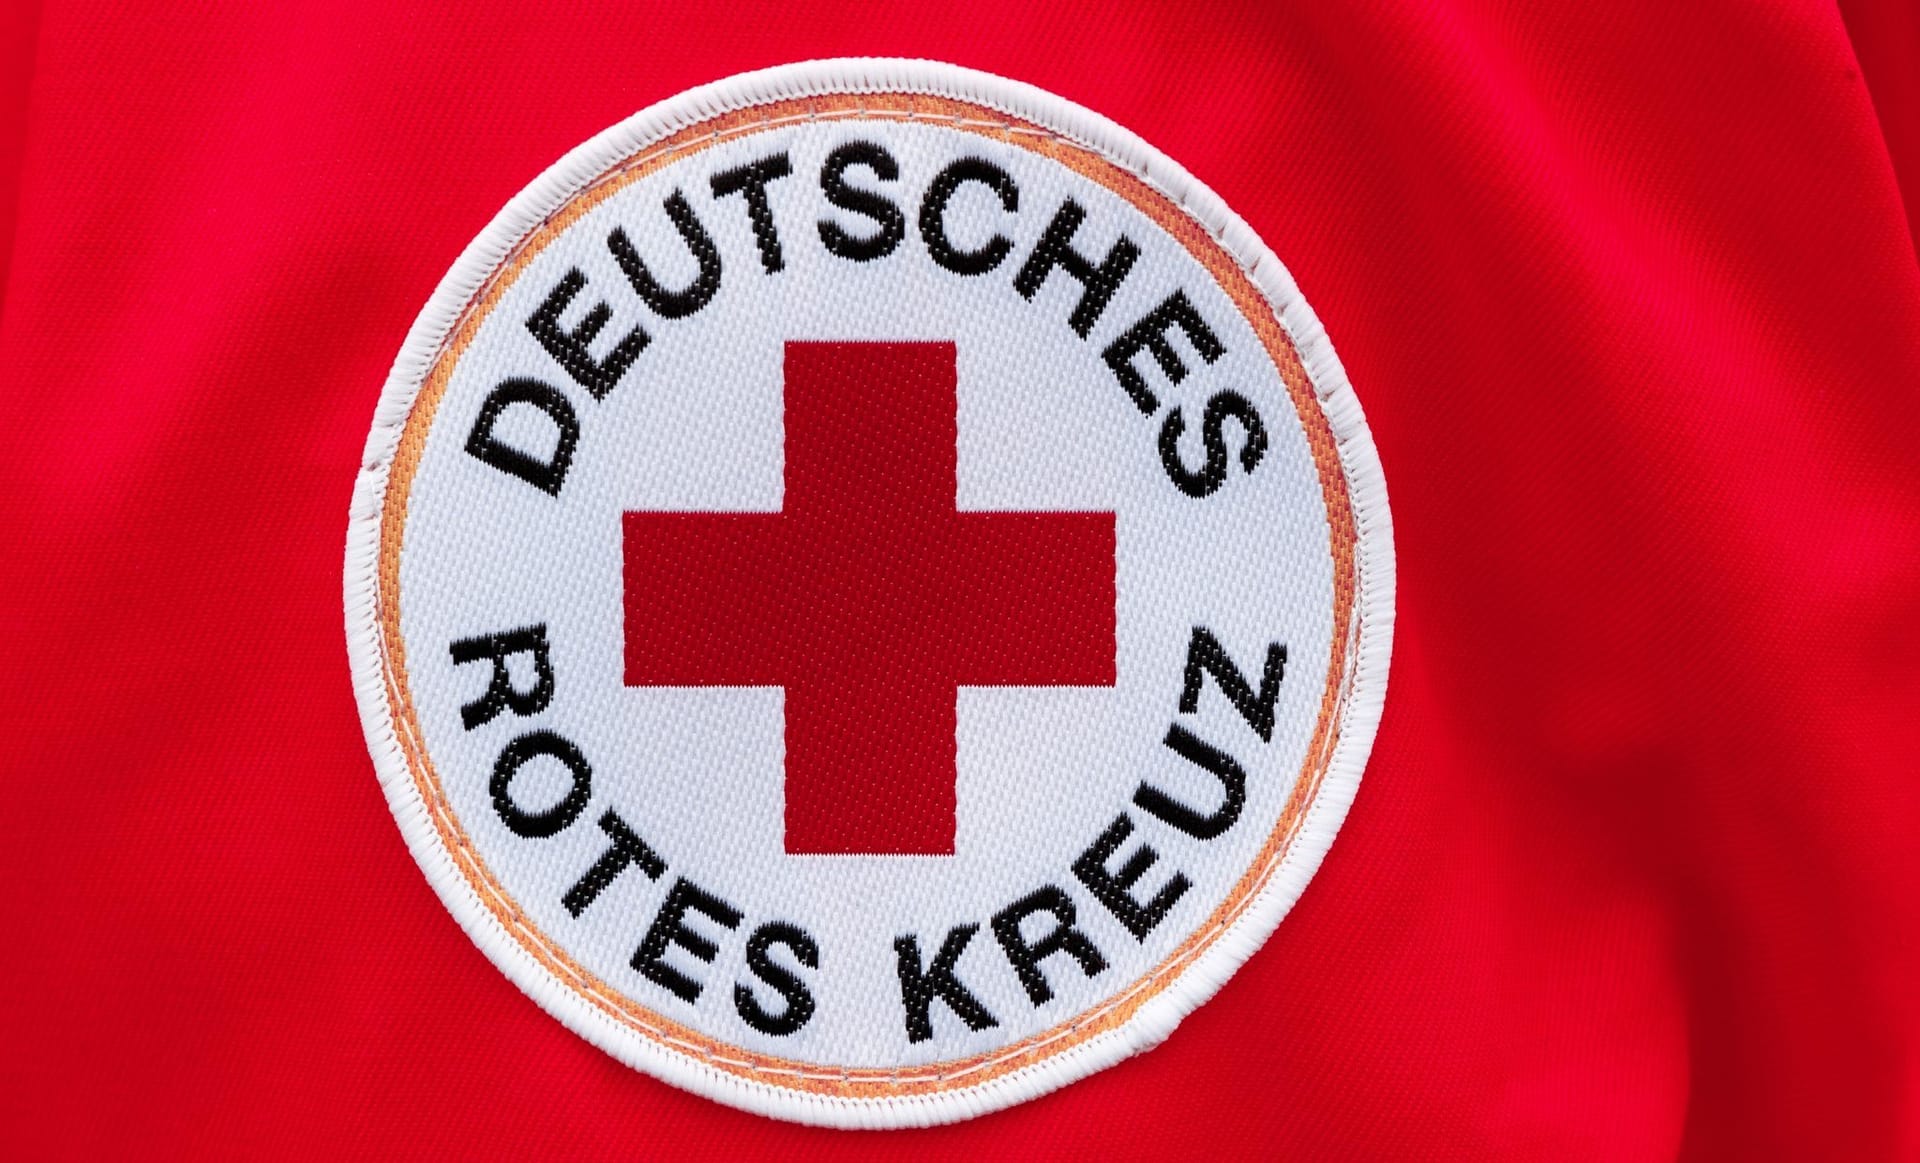 Suchdienst Deutsches Rotes Kreuz